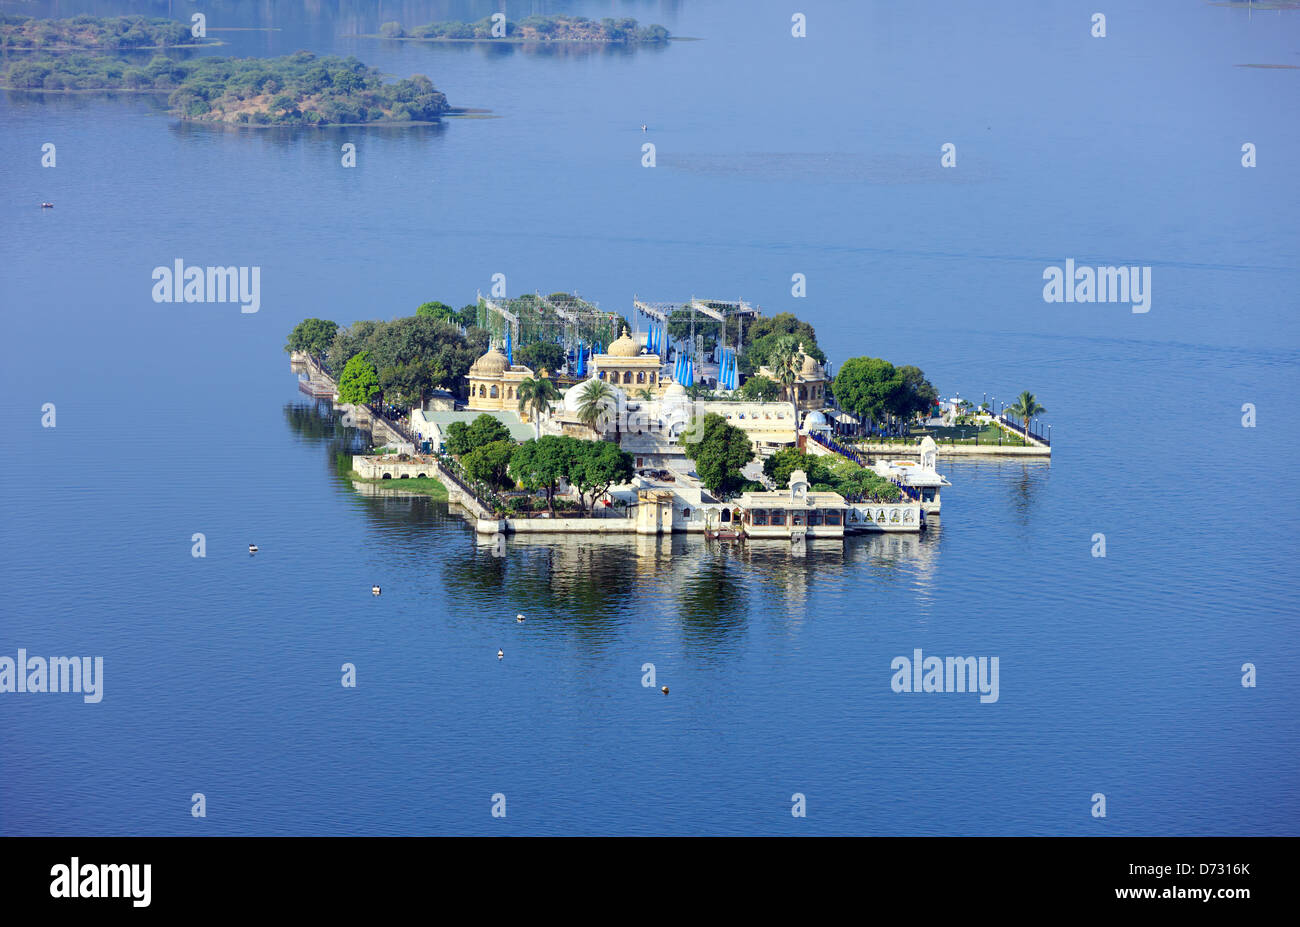 Jag Mandir Palace, le lac Pichola, Udaipur, Rajasthan, Inde, Asie Banque D'Images